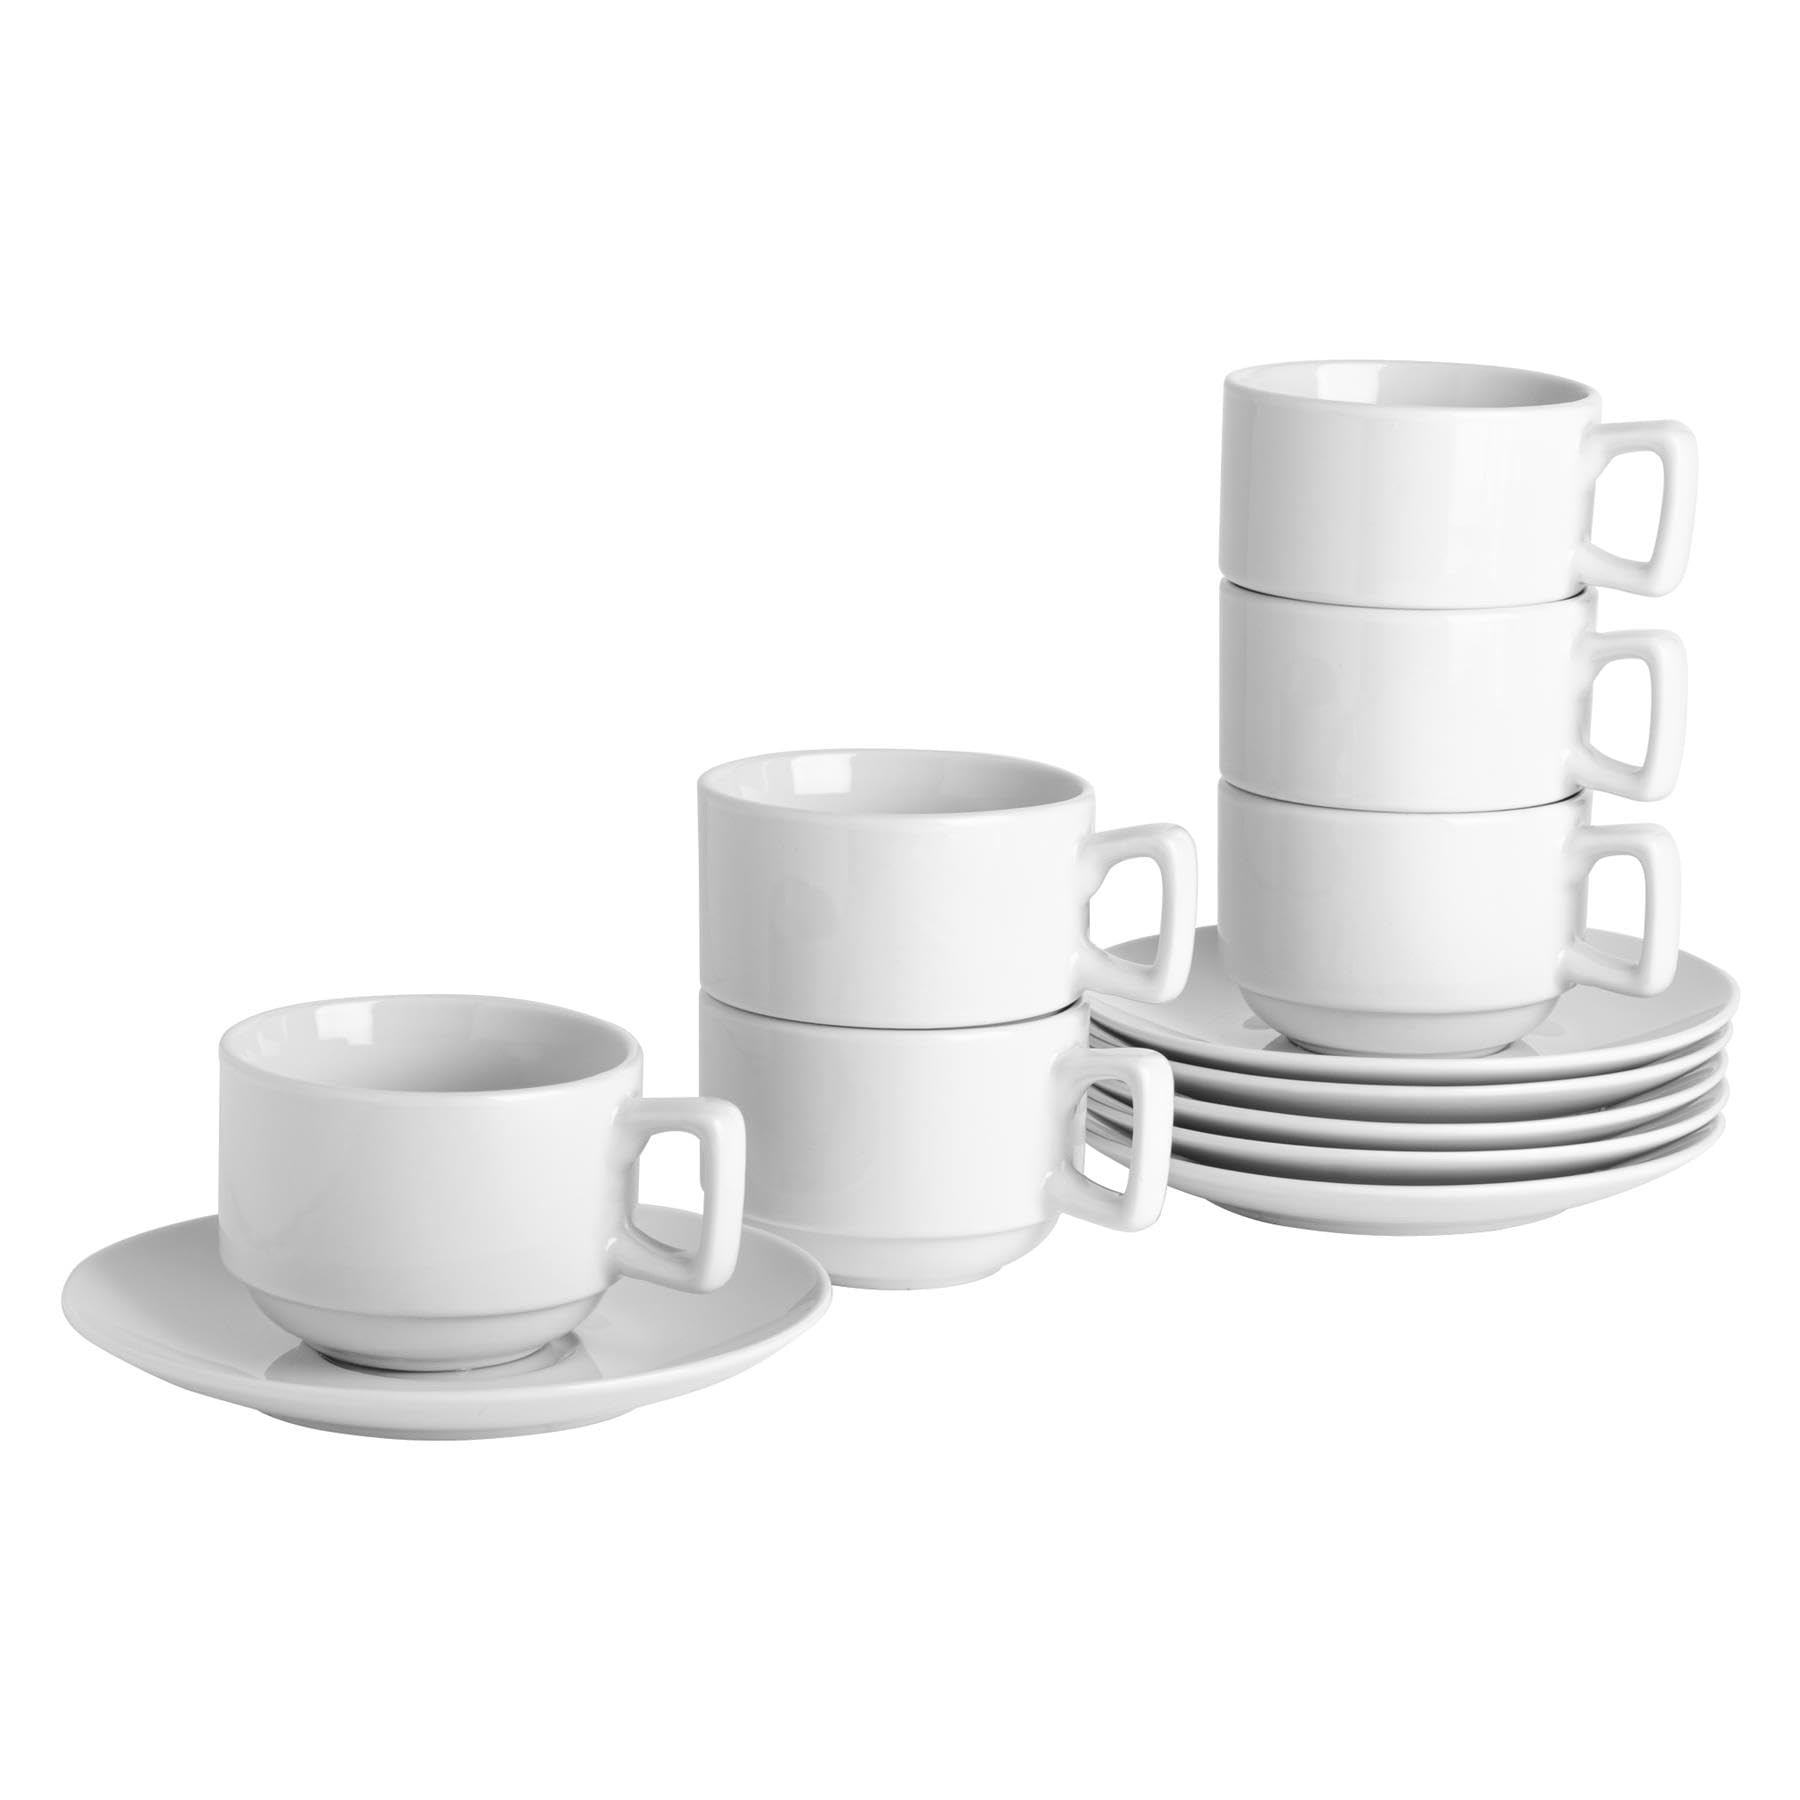 Achat Argon Tableware 24 Piece Classic White Stacking Teacup & Soucoupe - Thè Porcelaine Cafè Tasse avec Vaisselle - 200ml QWld27yVY frais